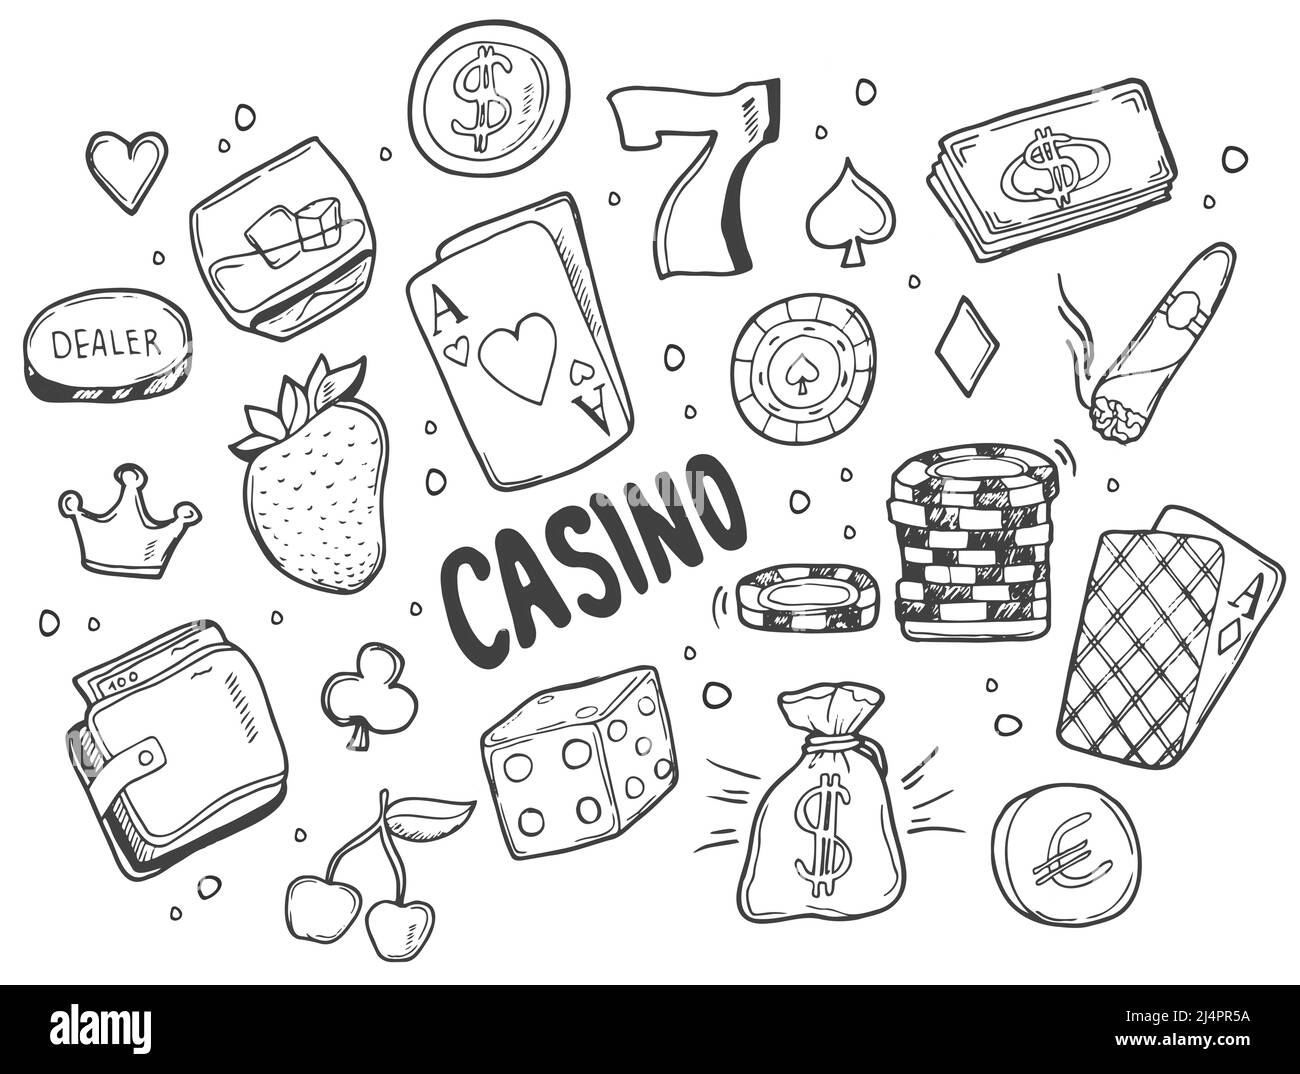 Doodle Sketchy vecteur Doodle dessin à la main ensemble de dessins animés des objets et des symboles du Casino Illustration de Vecteur